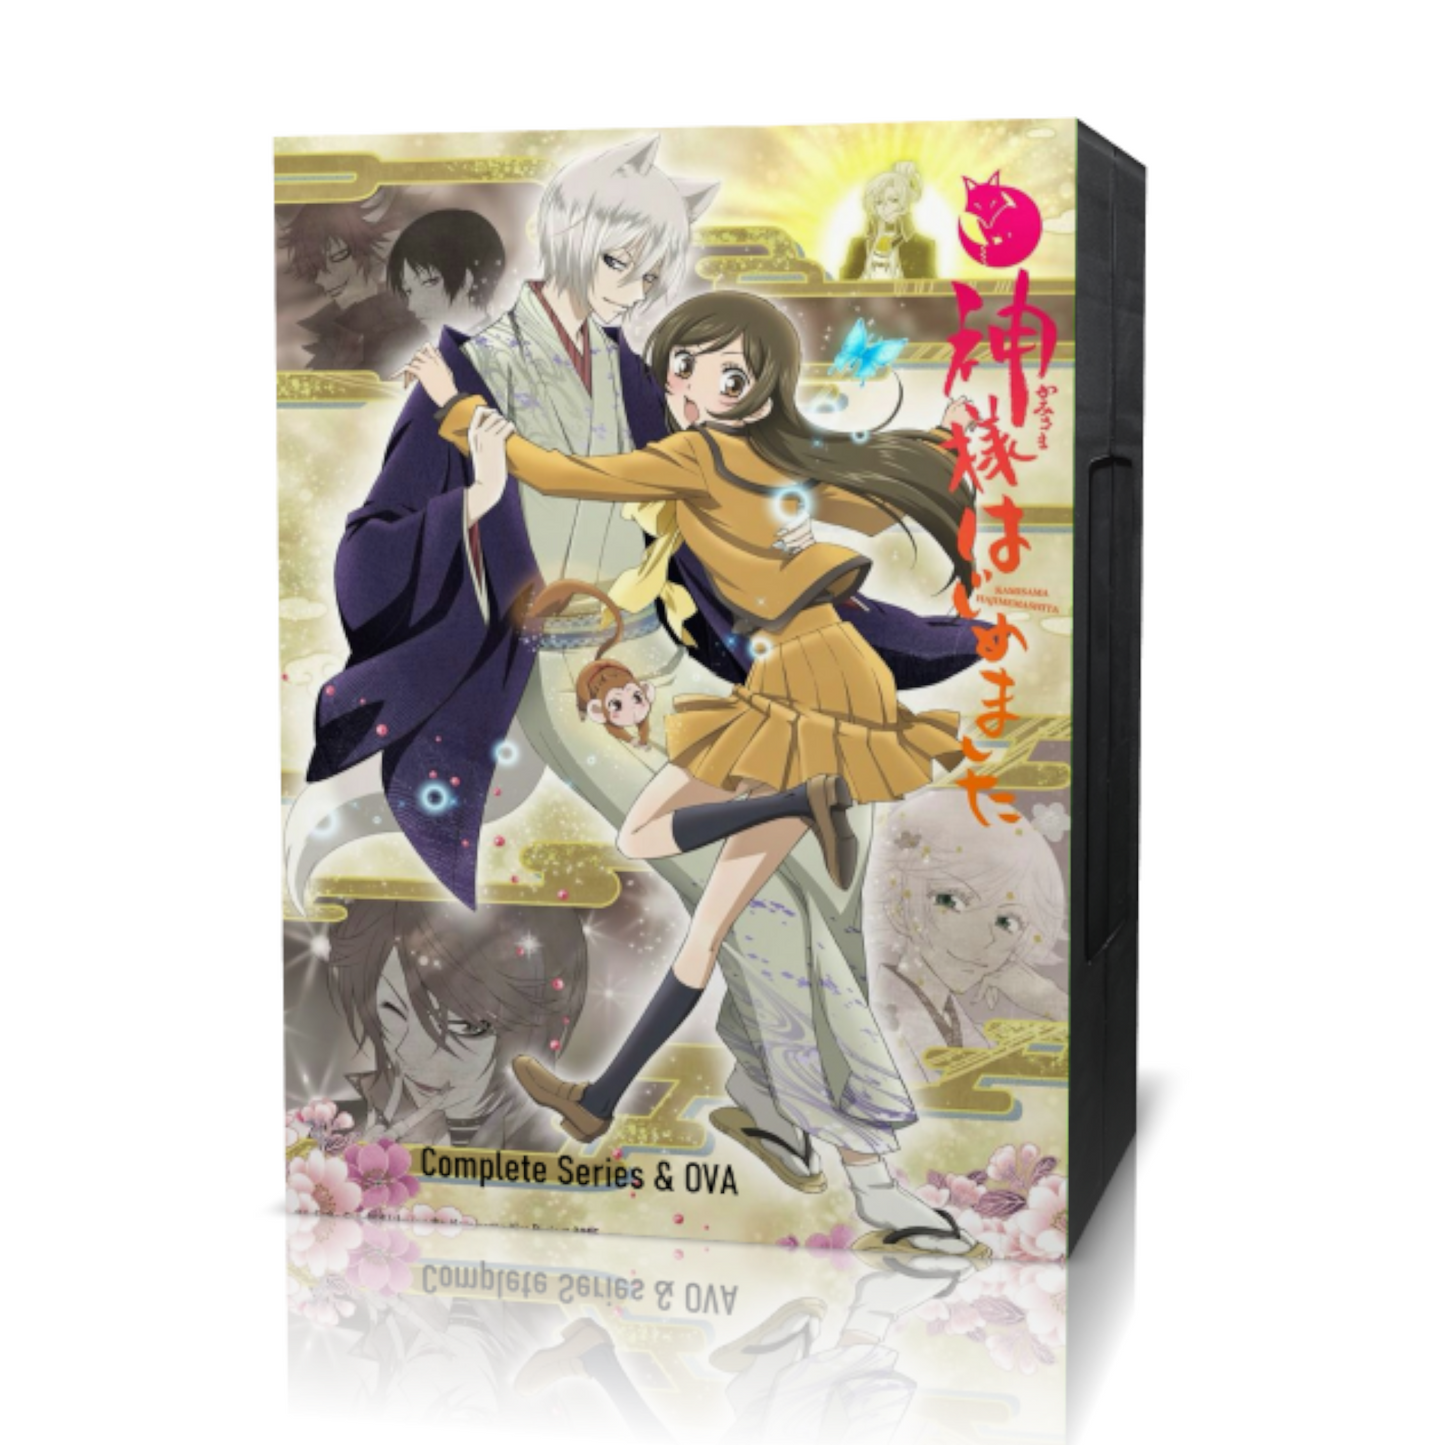 Kamisama Kiss The Complete Series & OVA Dual Audio DVD - Retrotoons